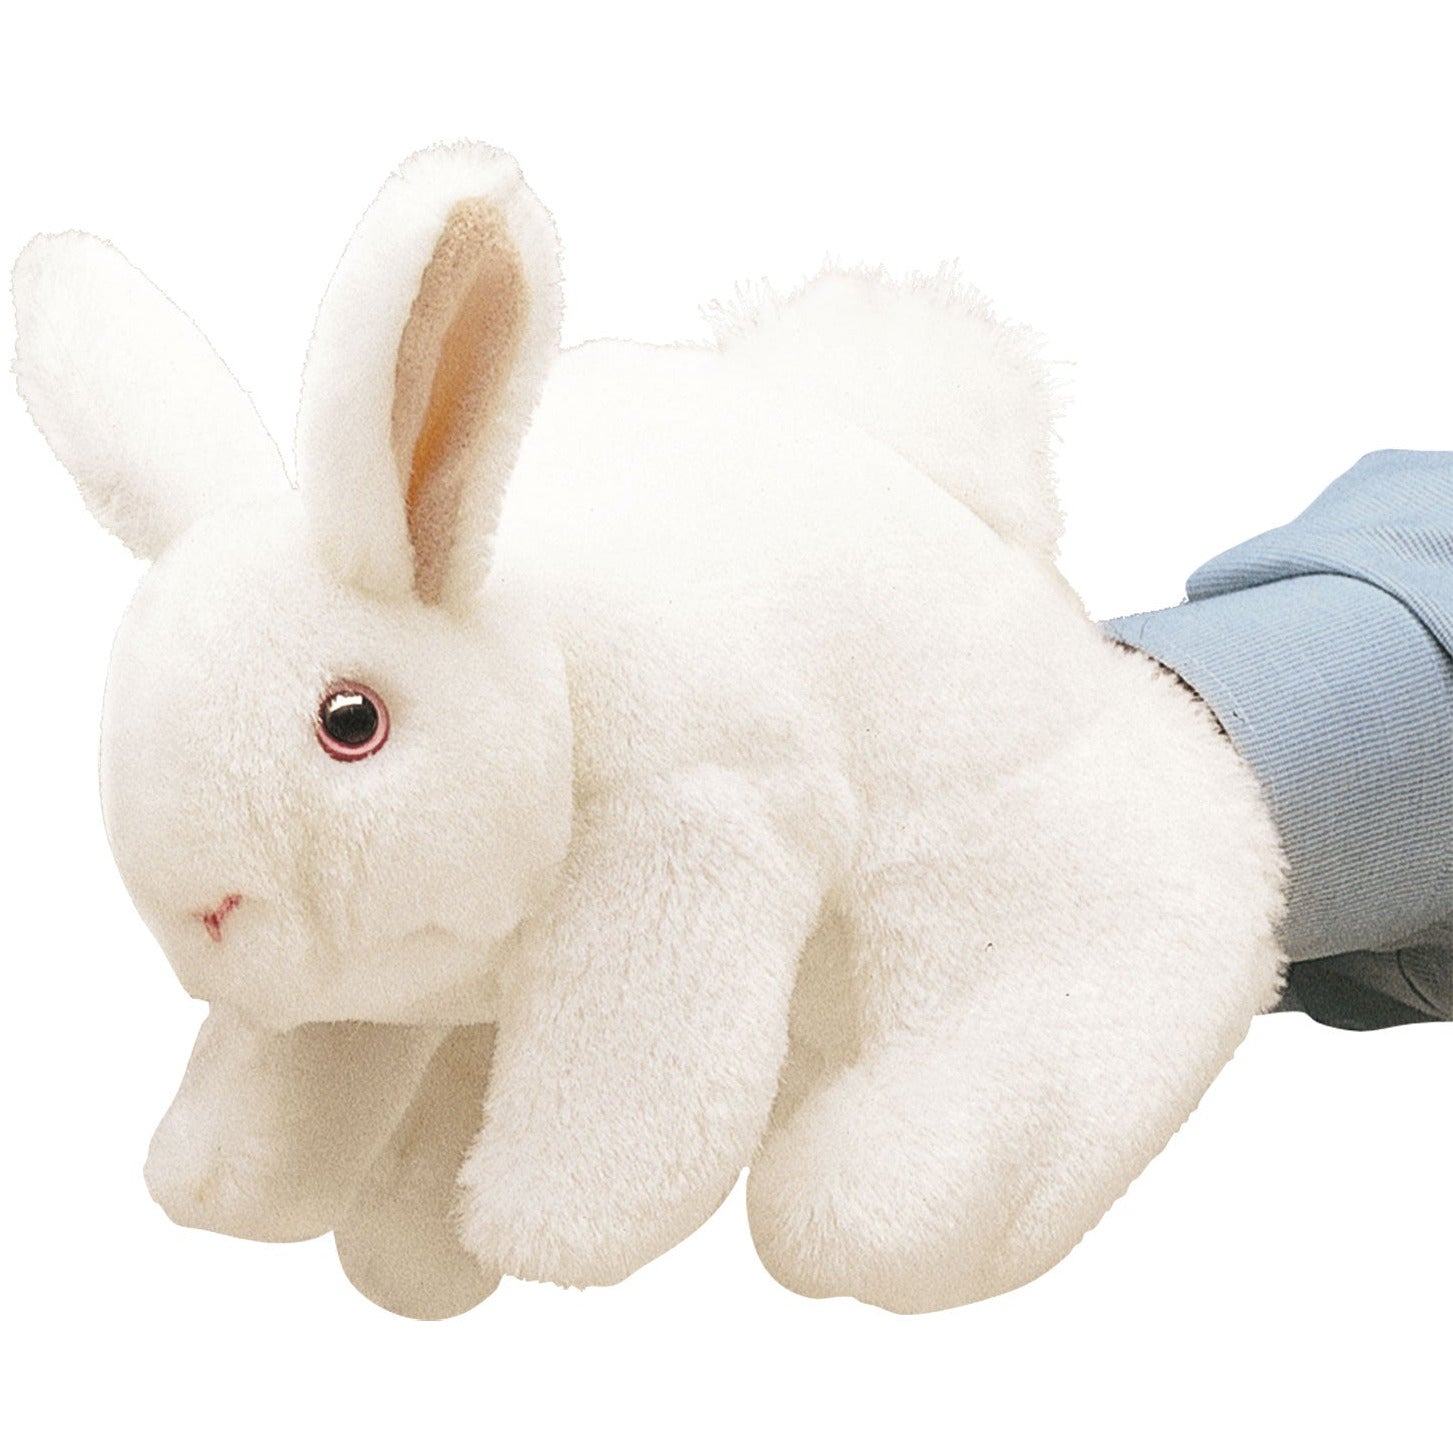 Folkmanis Puppets | Weißes Häschen / White Bunny Rabbit